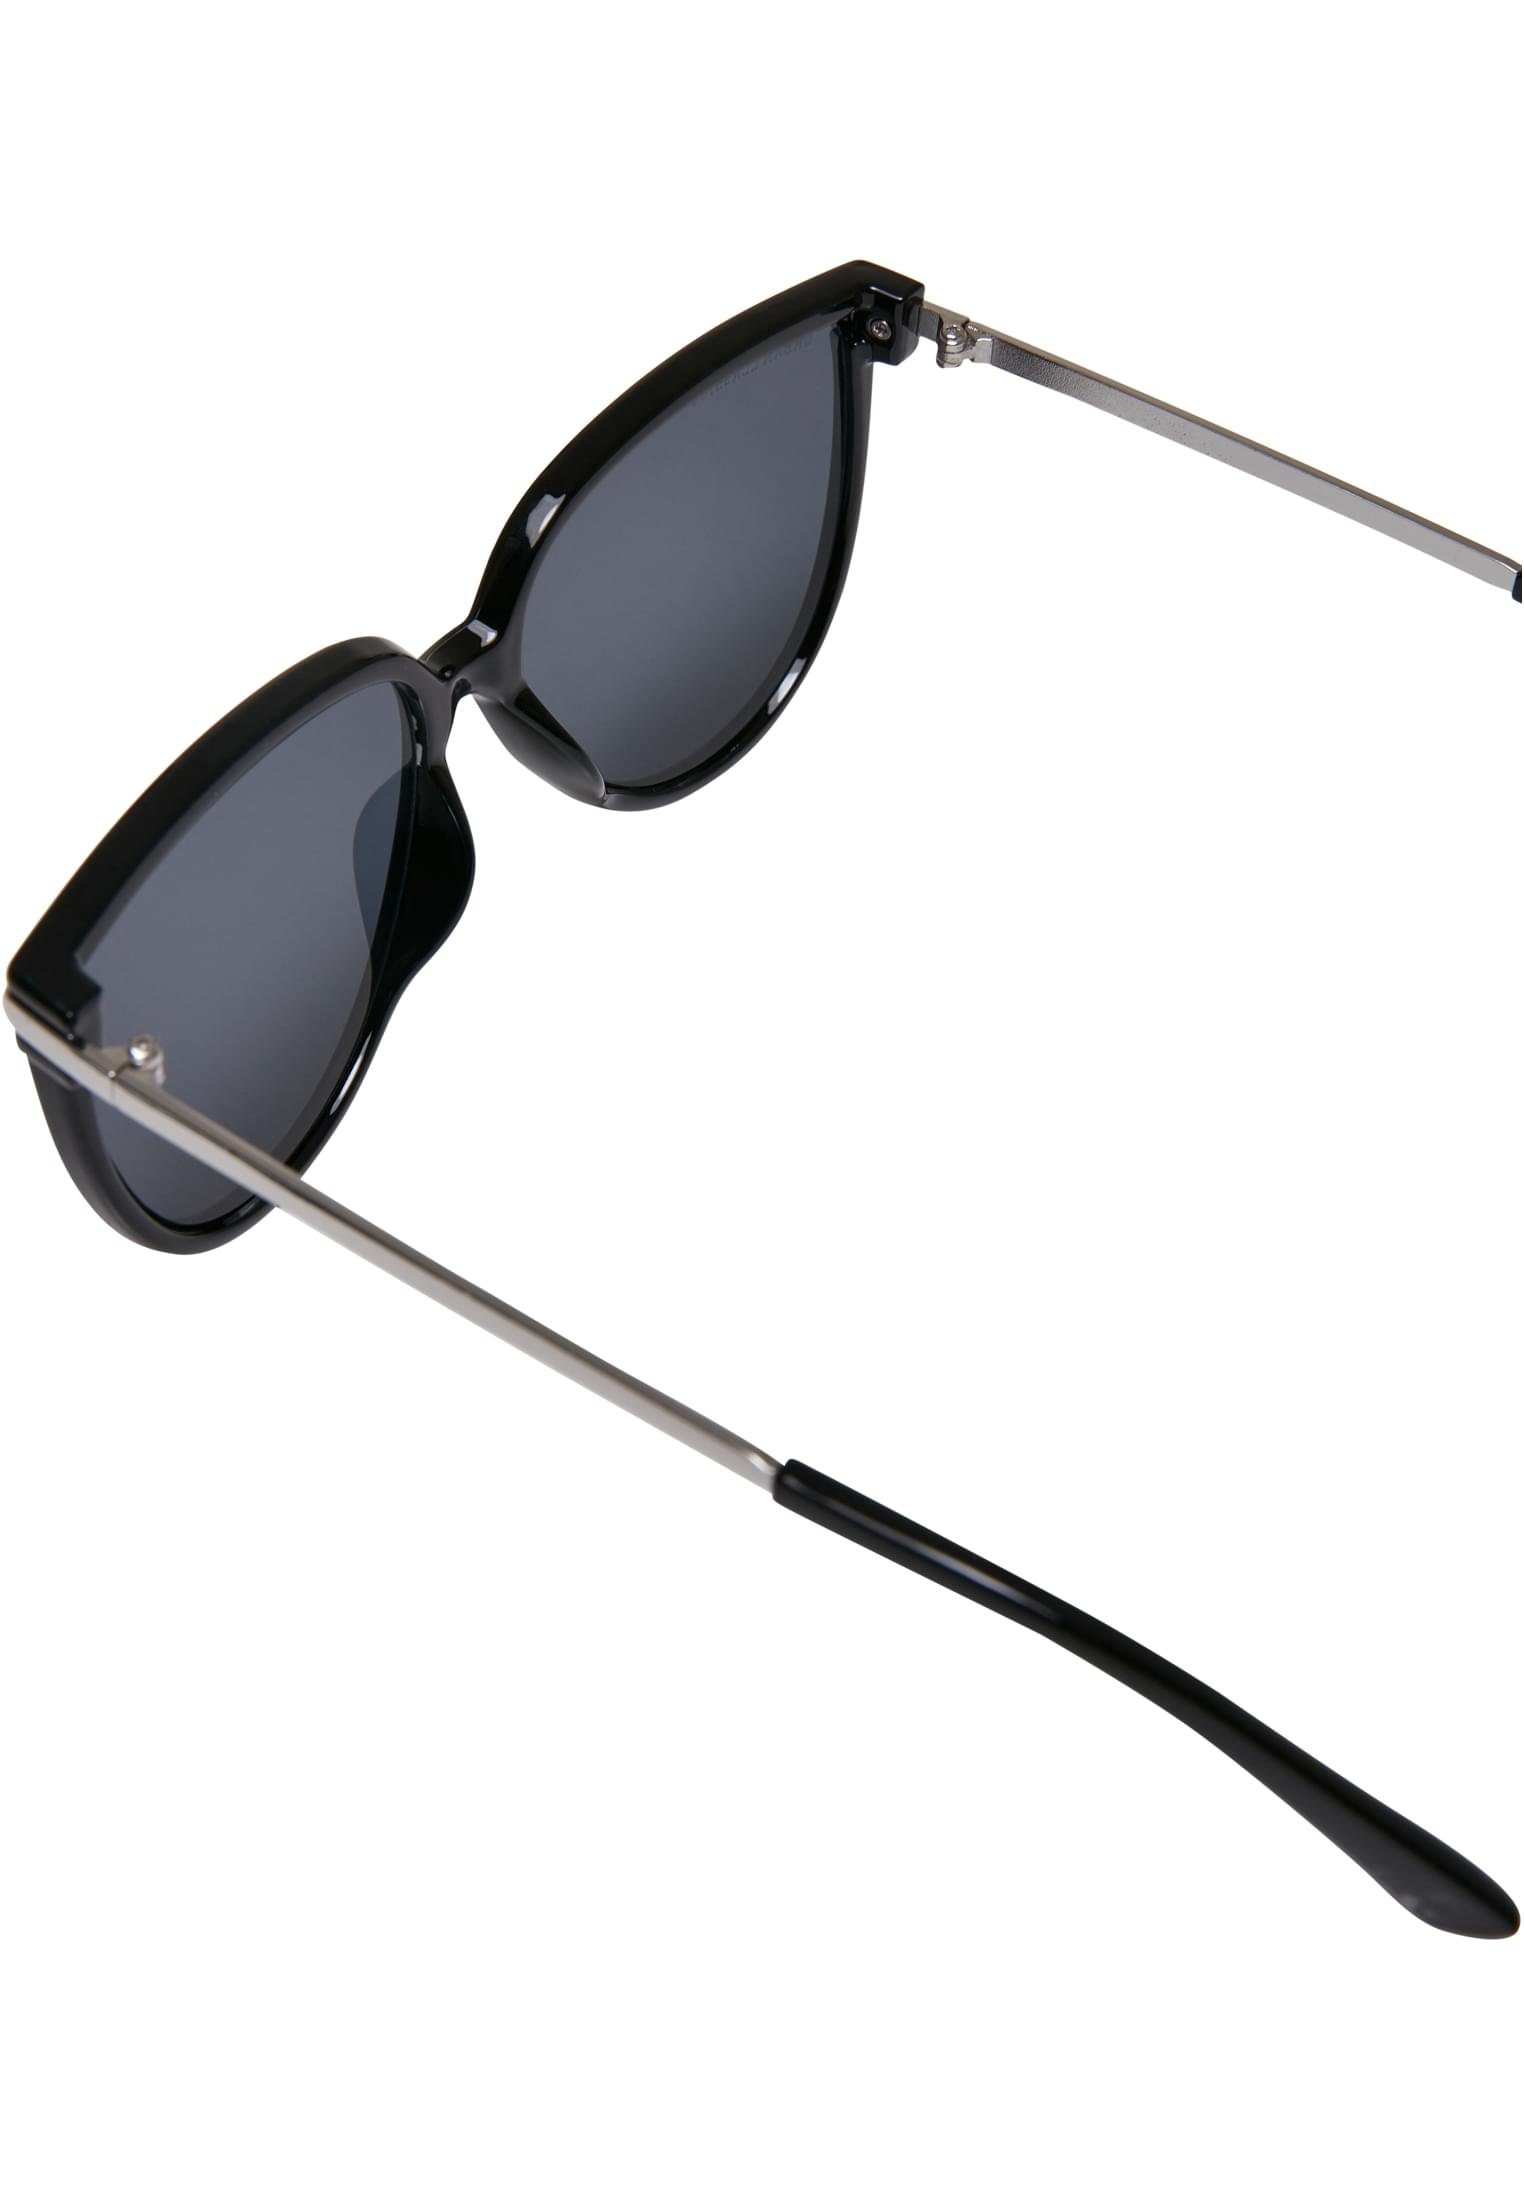 Unisex Sunglasses Sonnenbrille URBAN Milano CLASSICS